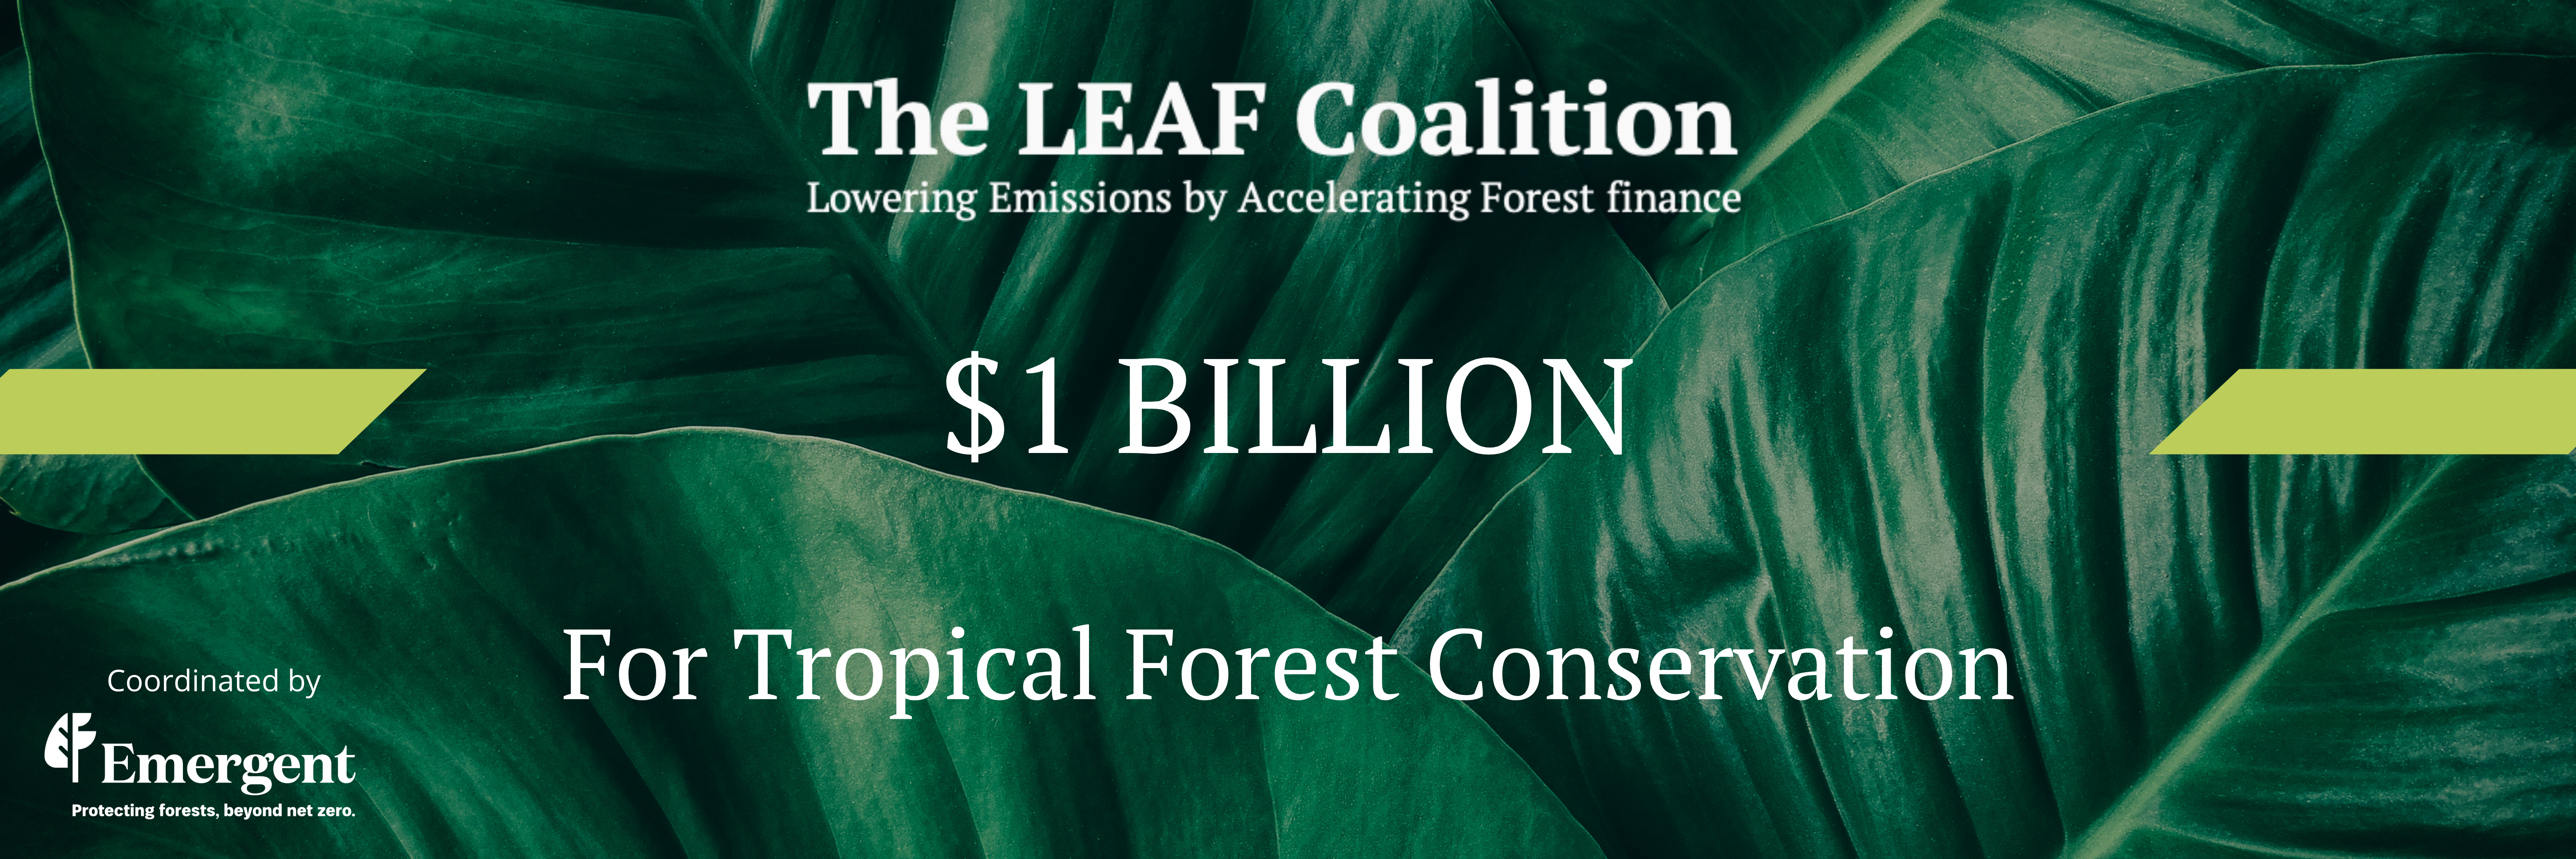 LEAF Coalition Mobilizes $1 Billion for Tropical Forest Conservation